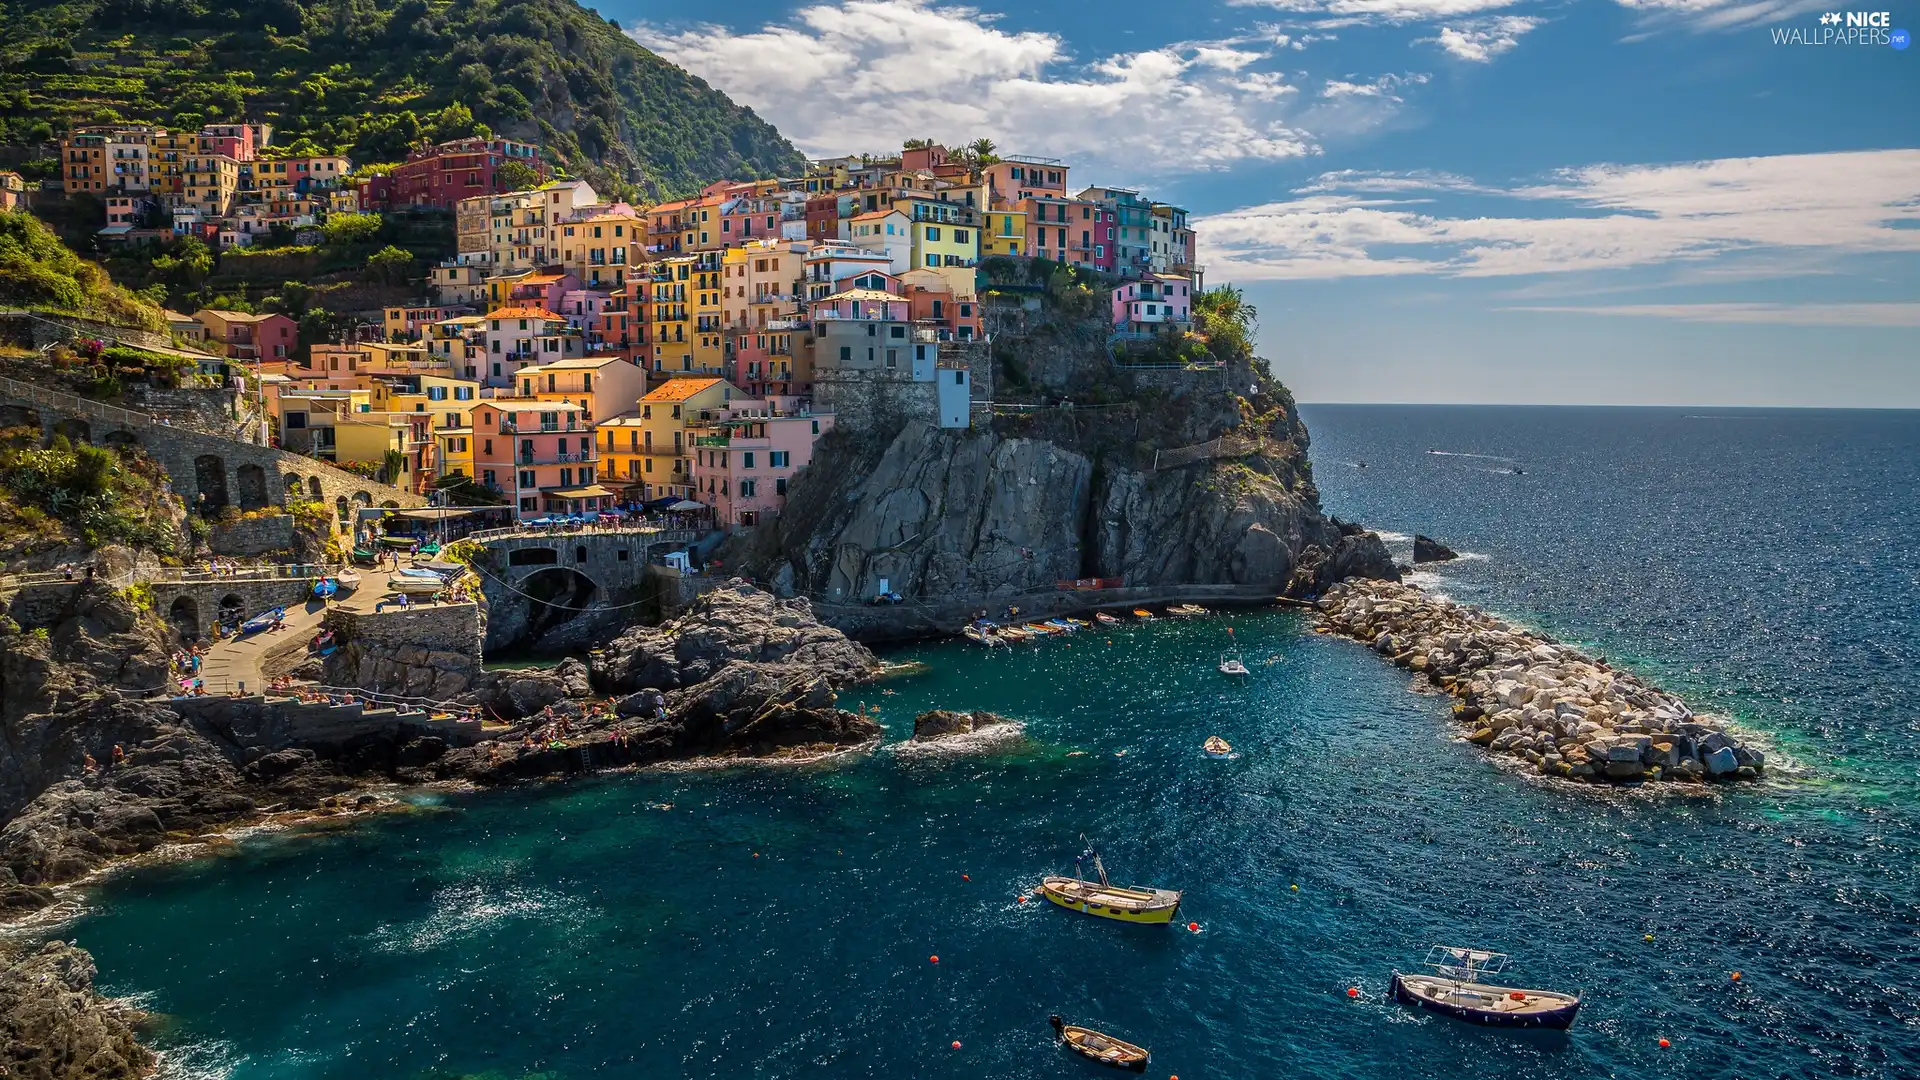 Cinque Terre, Coast, Ligurian Sea, Houses, Riomaggiore Municipality, Italy, boats, Manarola, rocks